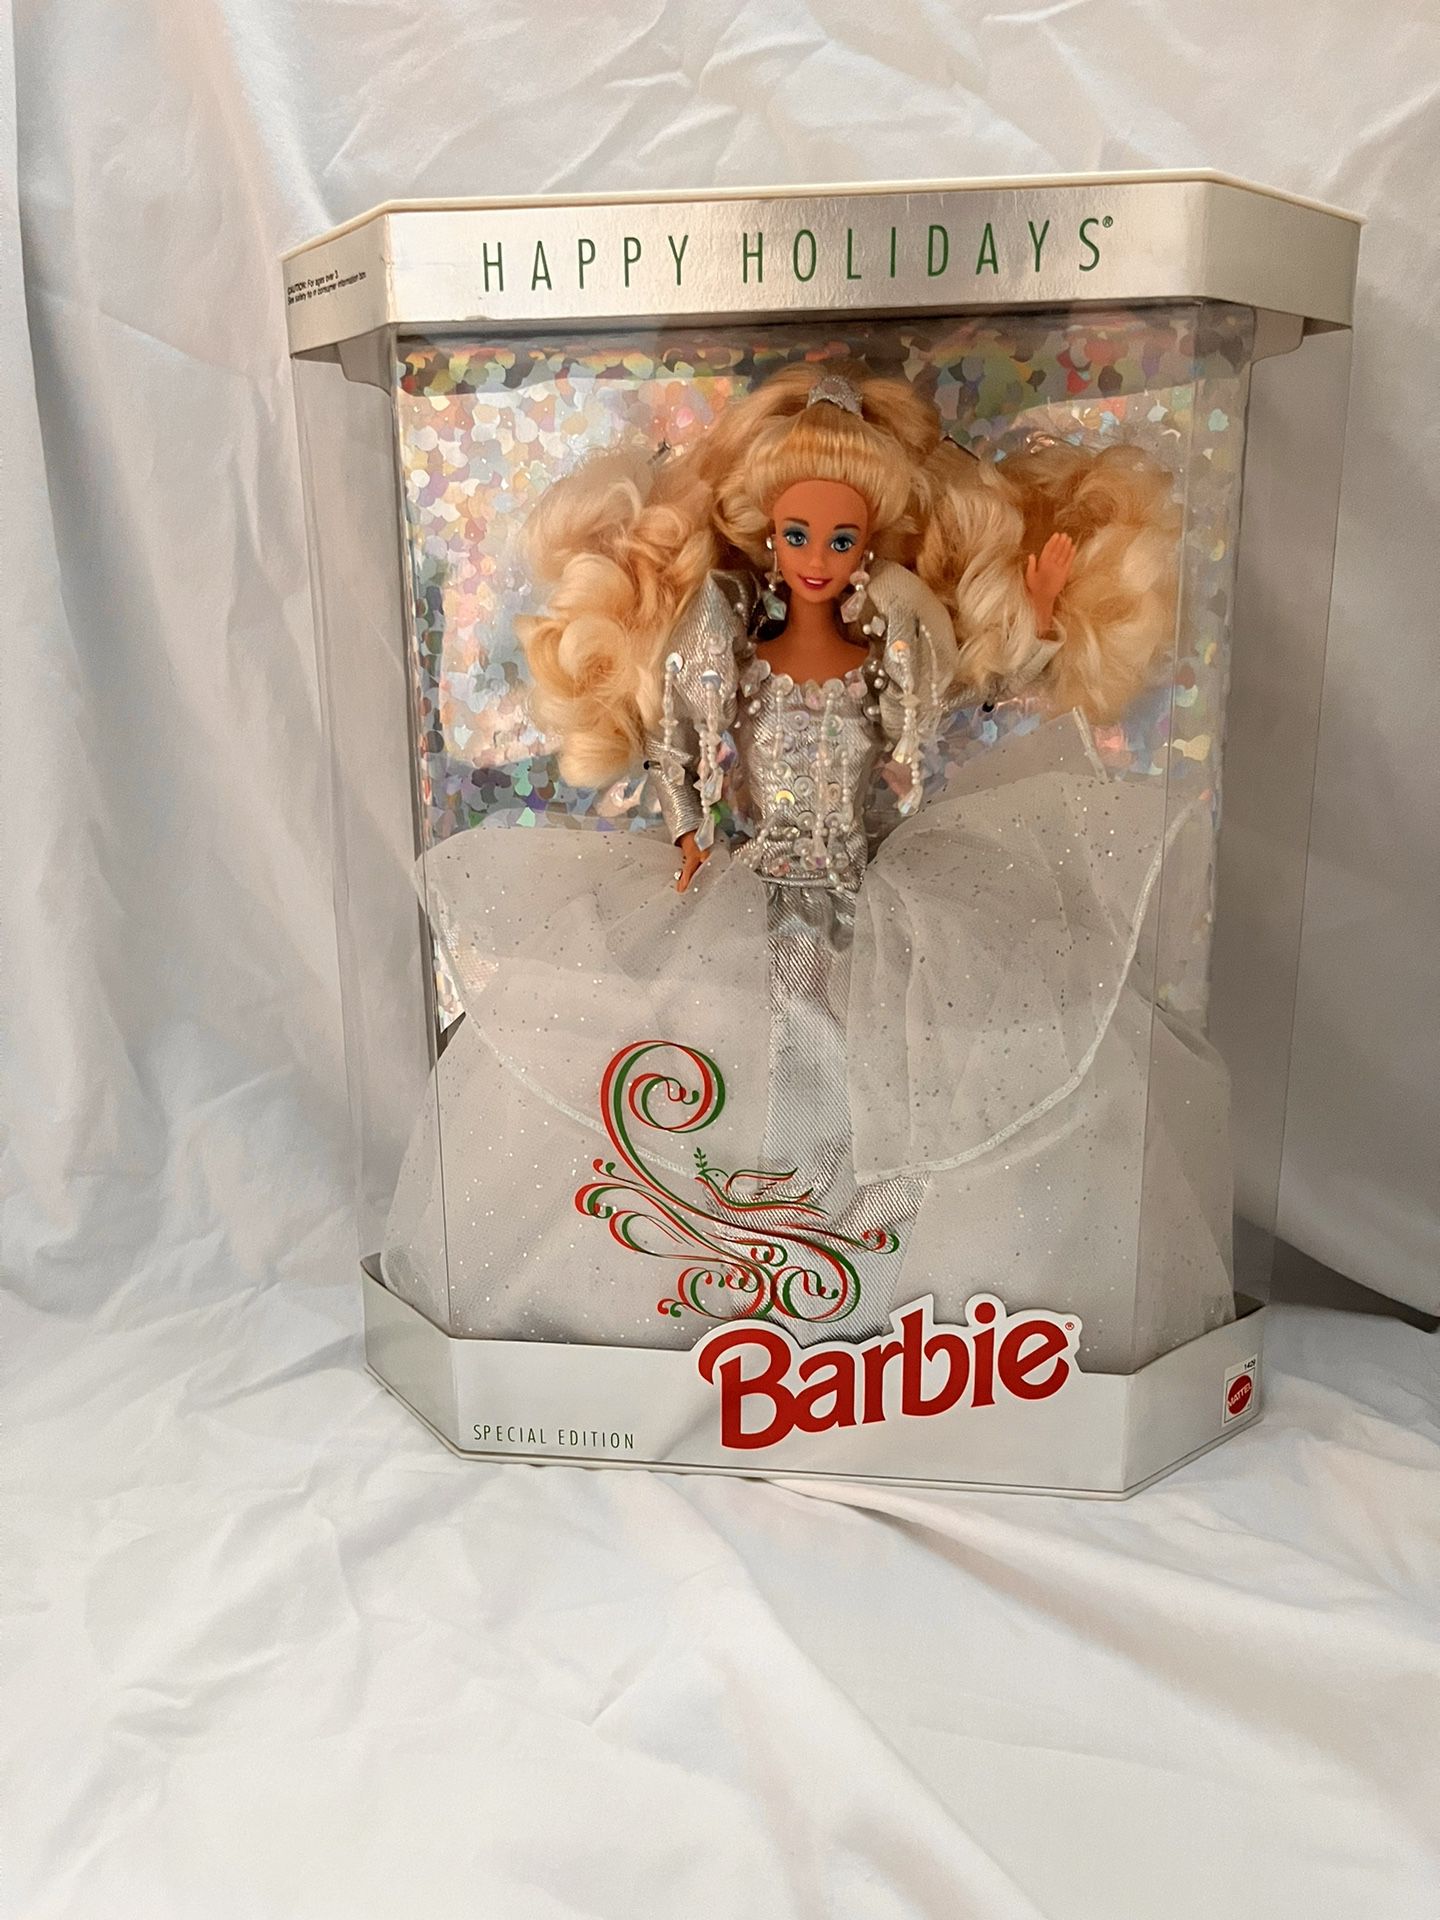 Vintage “Happy Holidays” Barbie 1992 Special Edition